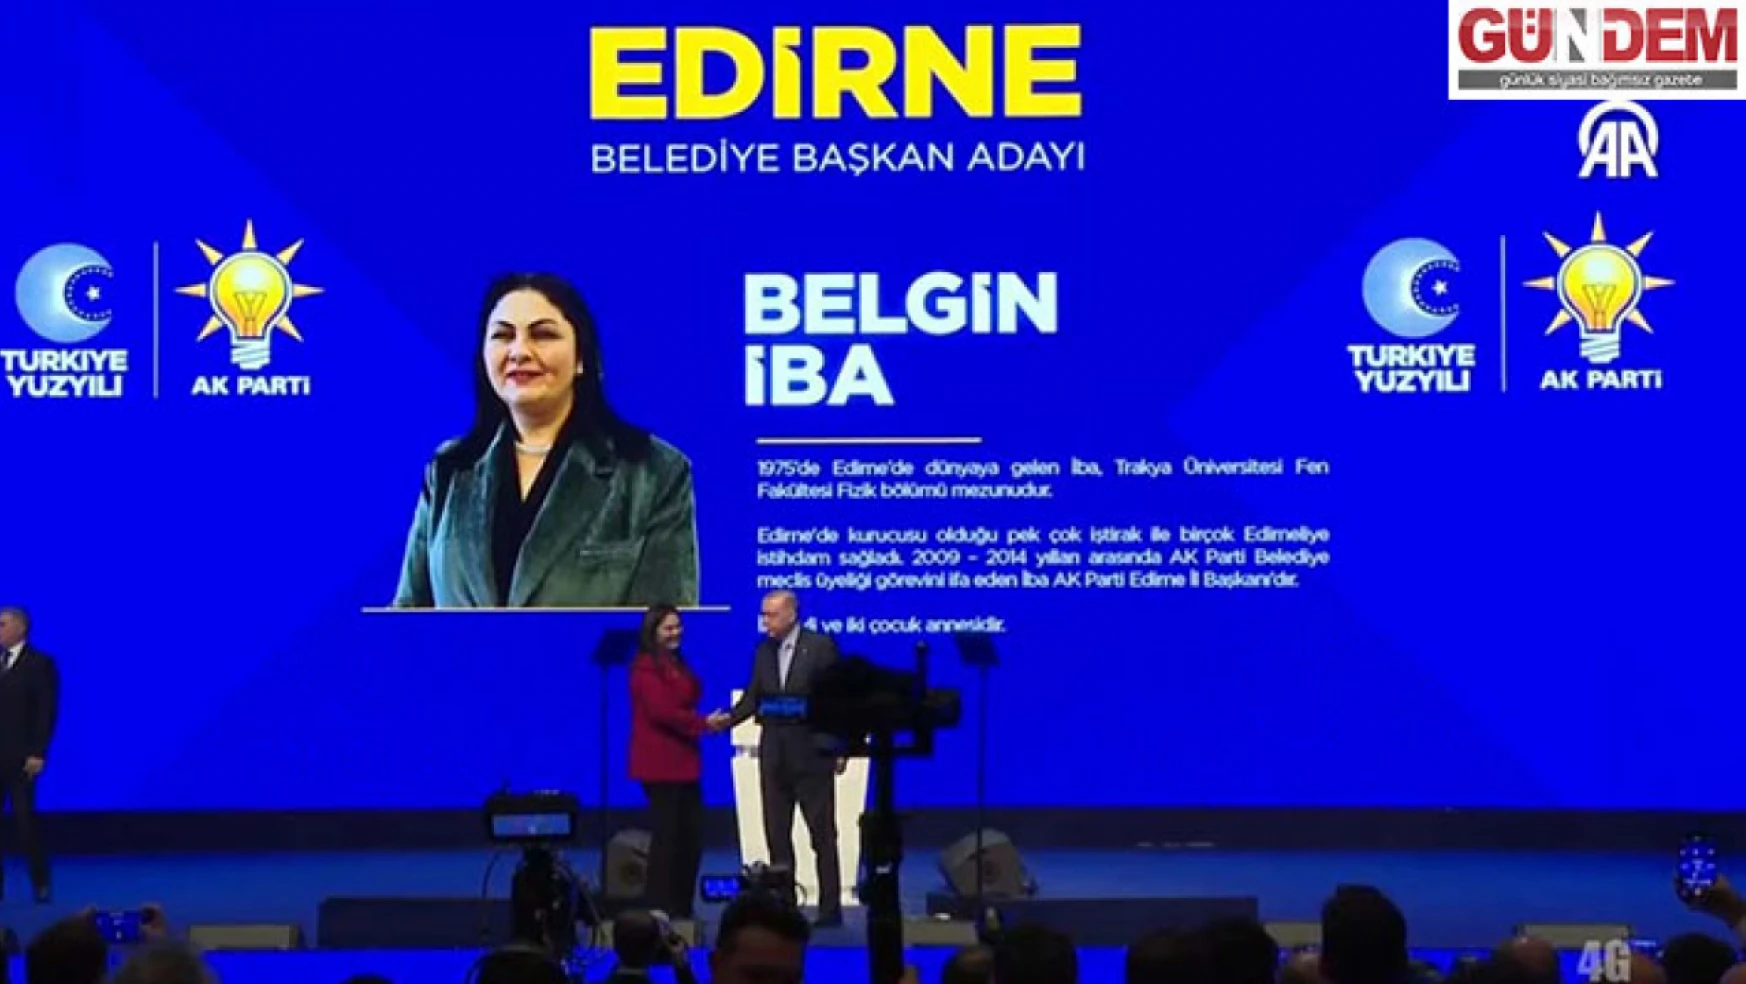 AK Parti Edirne Belediye Başkan Adayı Belgin İba